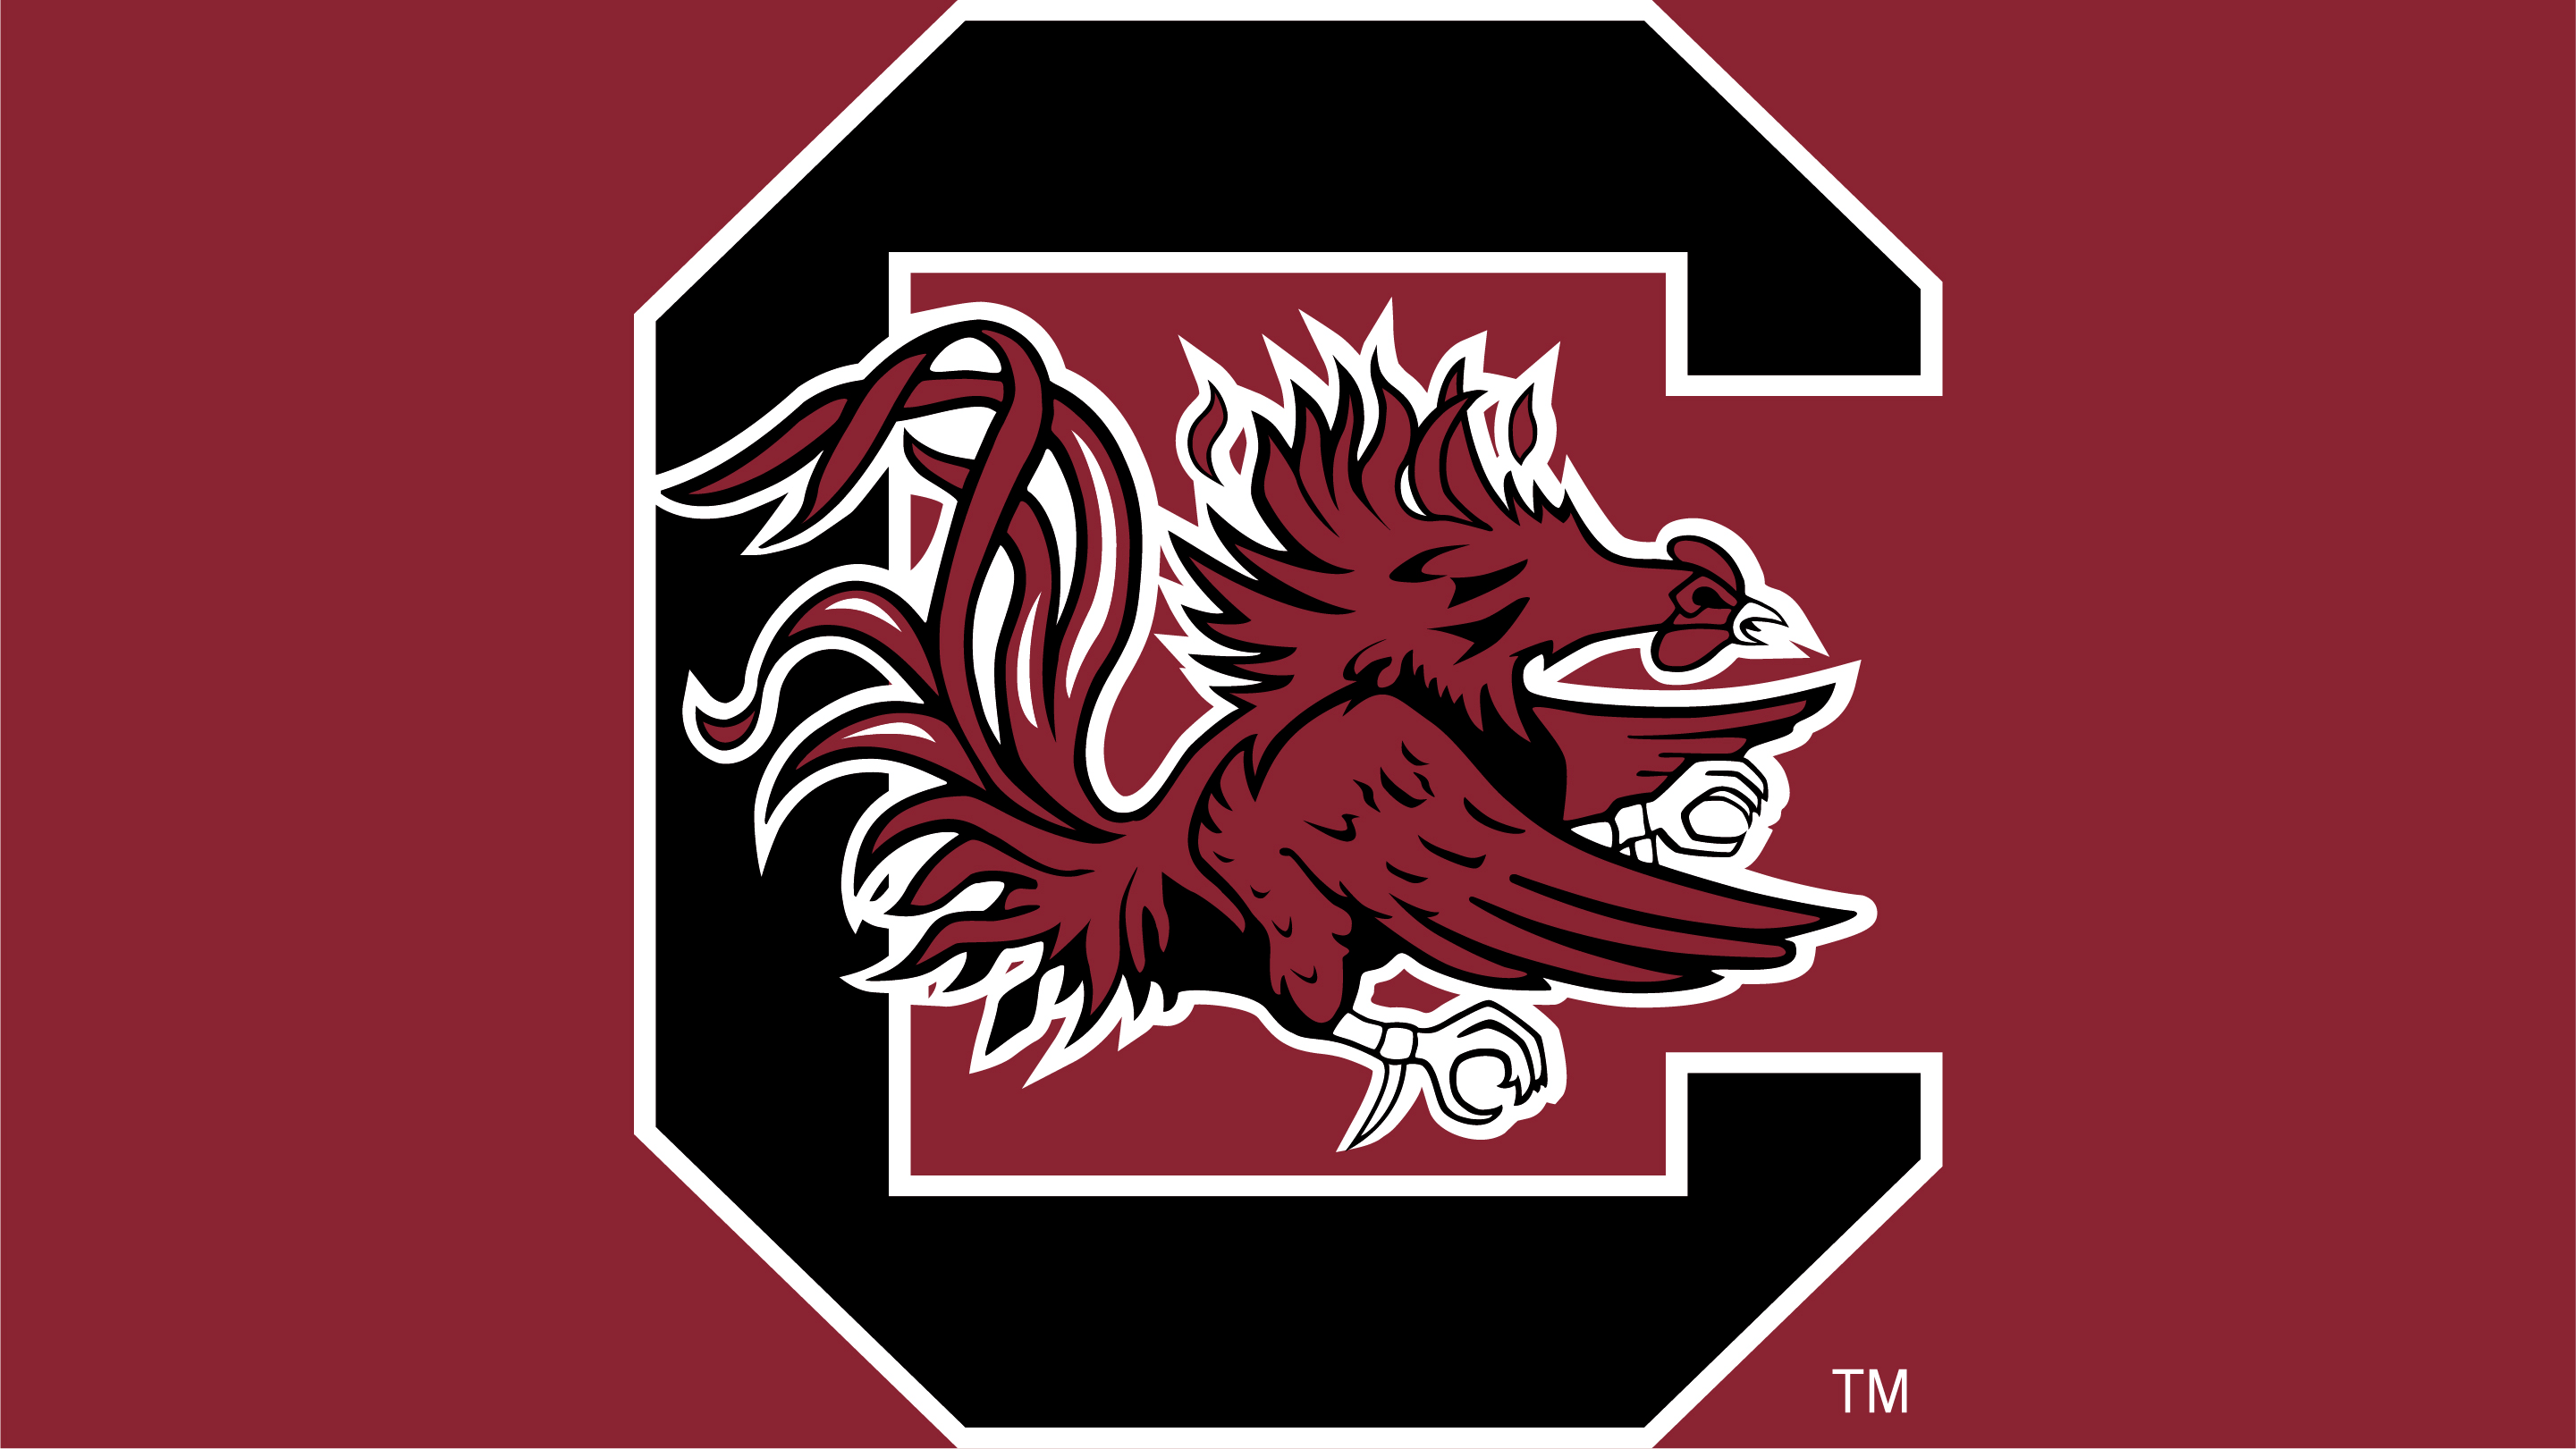 Team Color NCAA Logo Brands South Carolina Fighting Gamecocks Quad Chair 